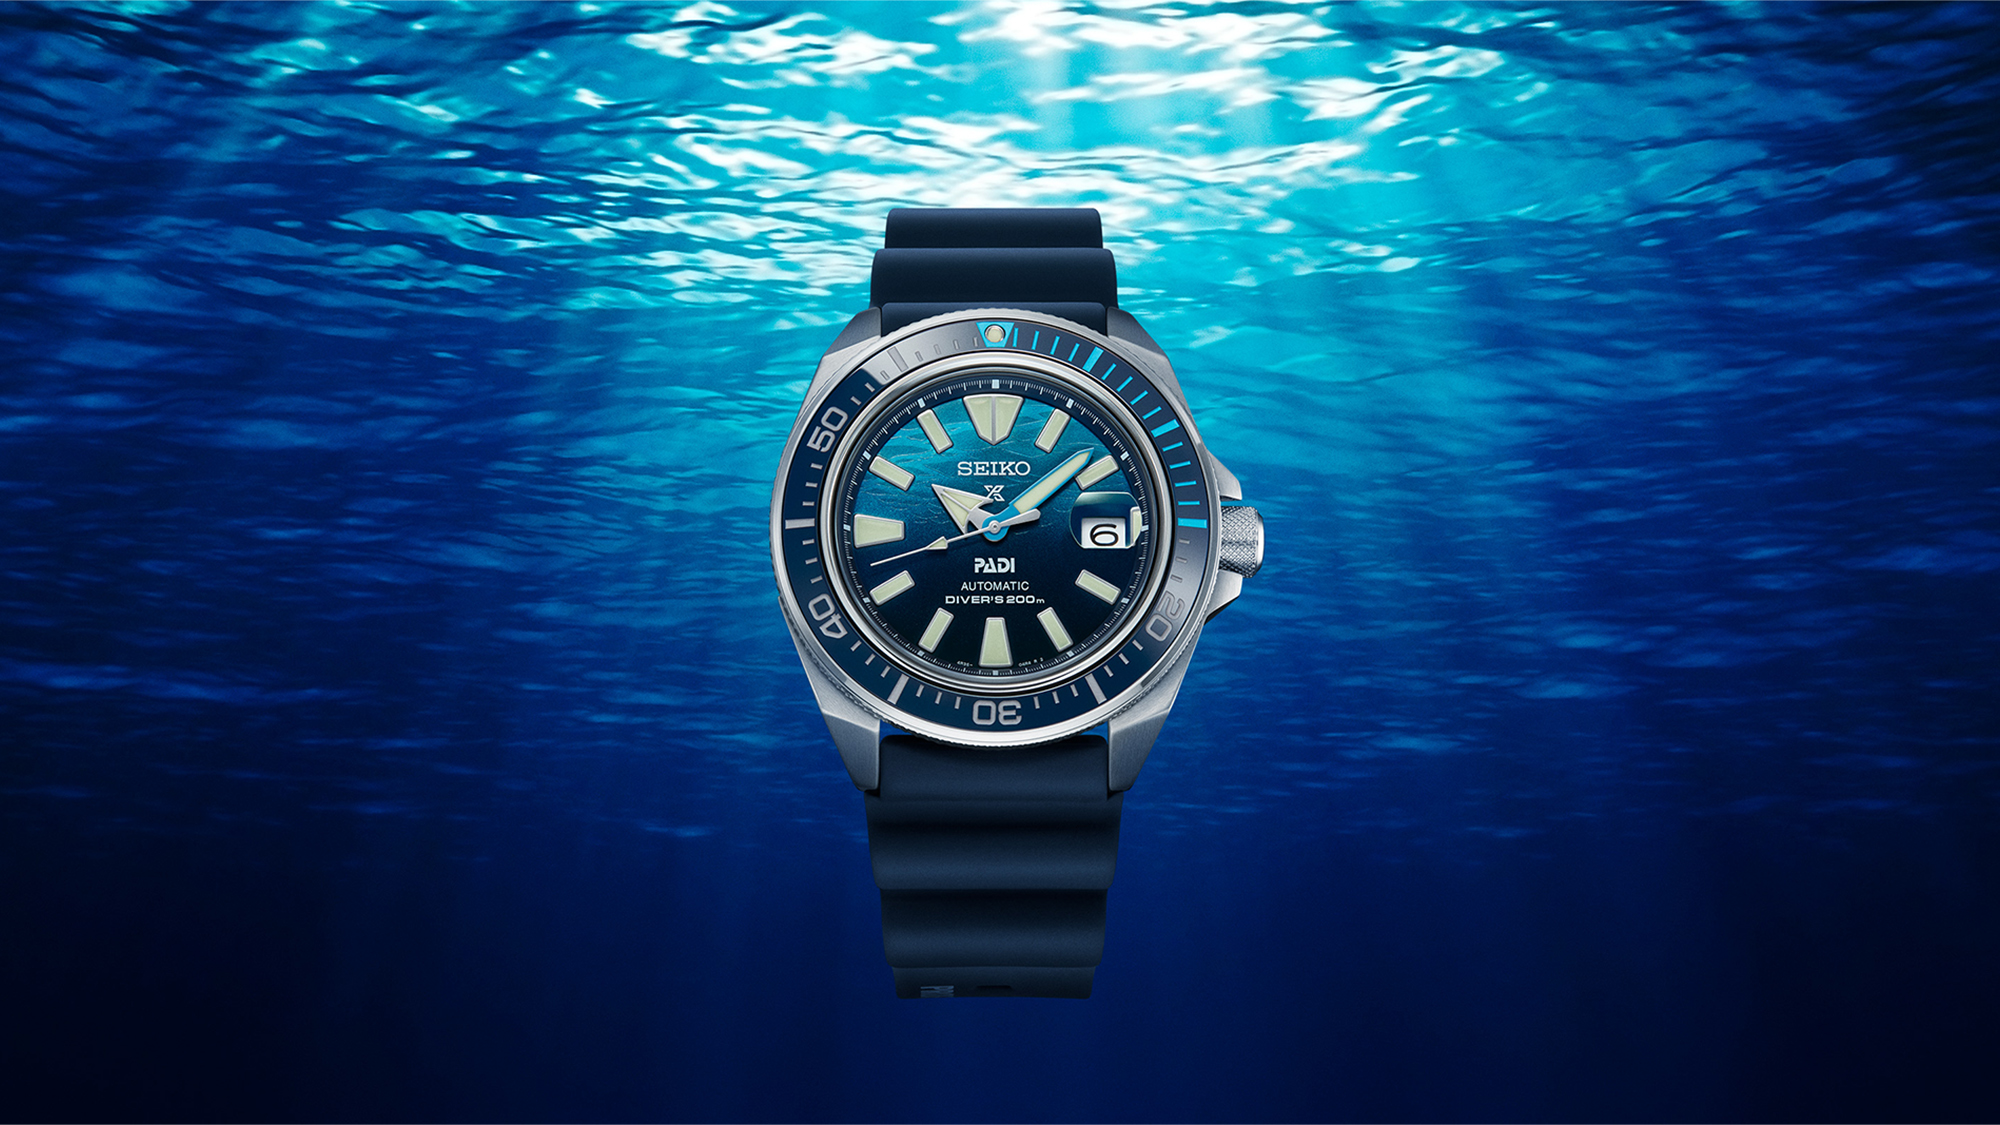 O azul do oceano inspira o mostrador da nova edição especial PADI (SRPJ93K1).